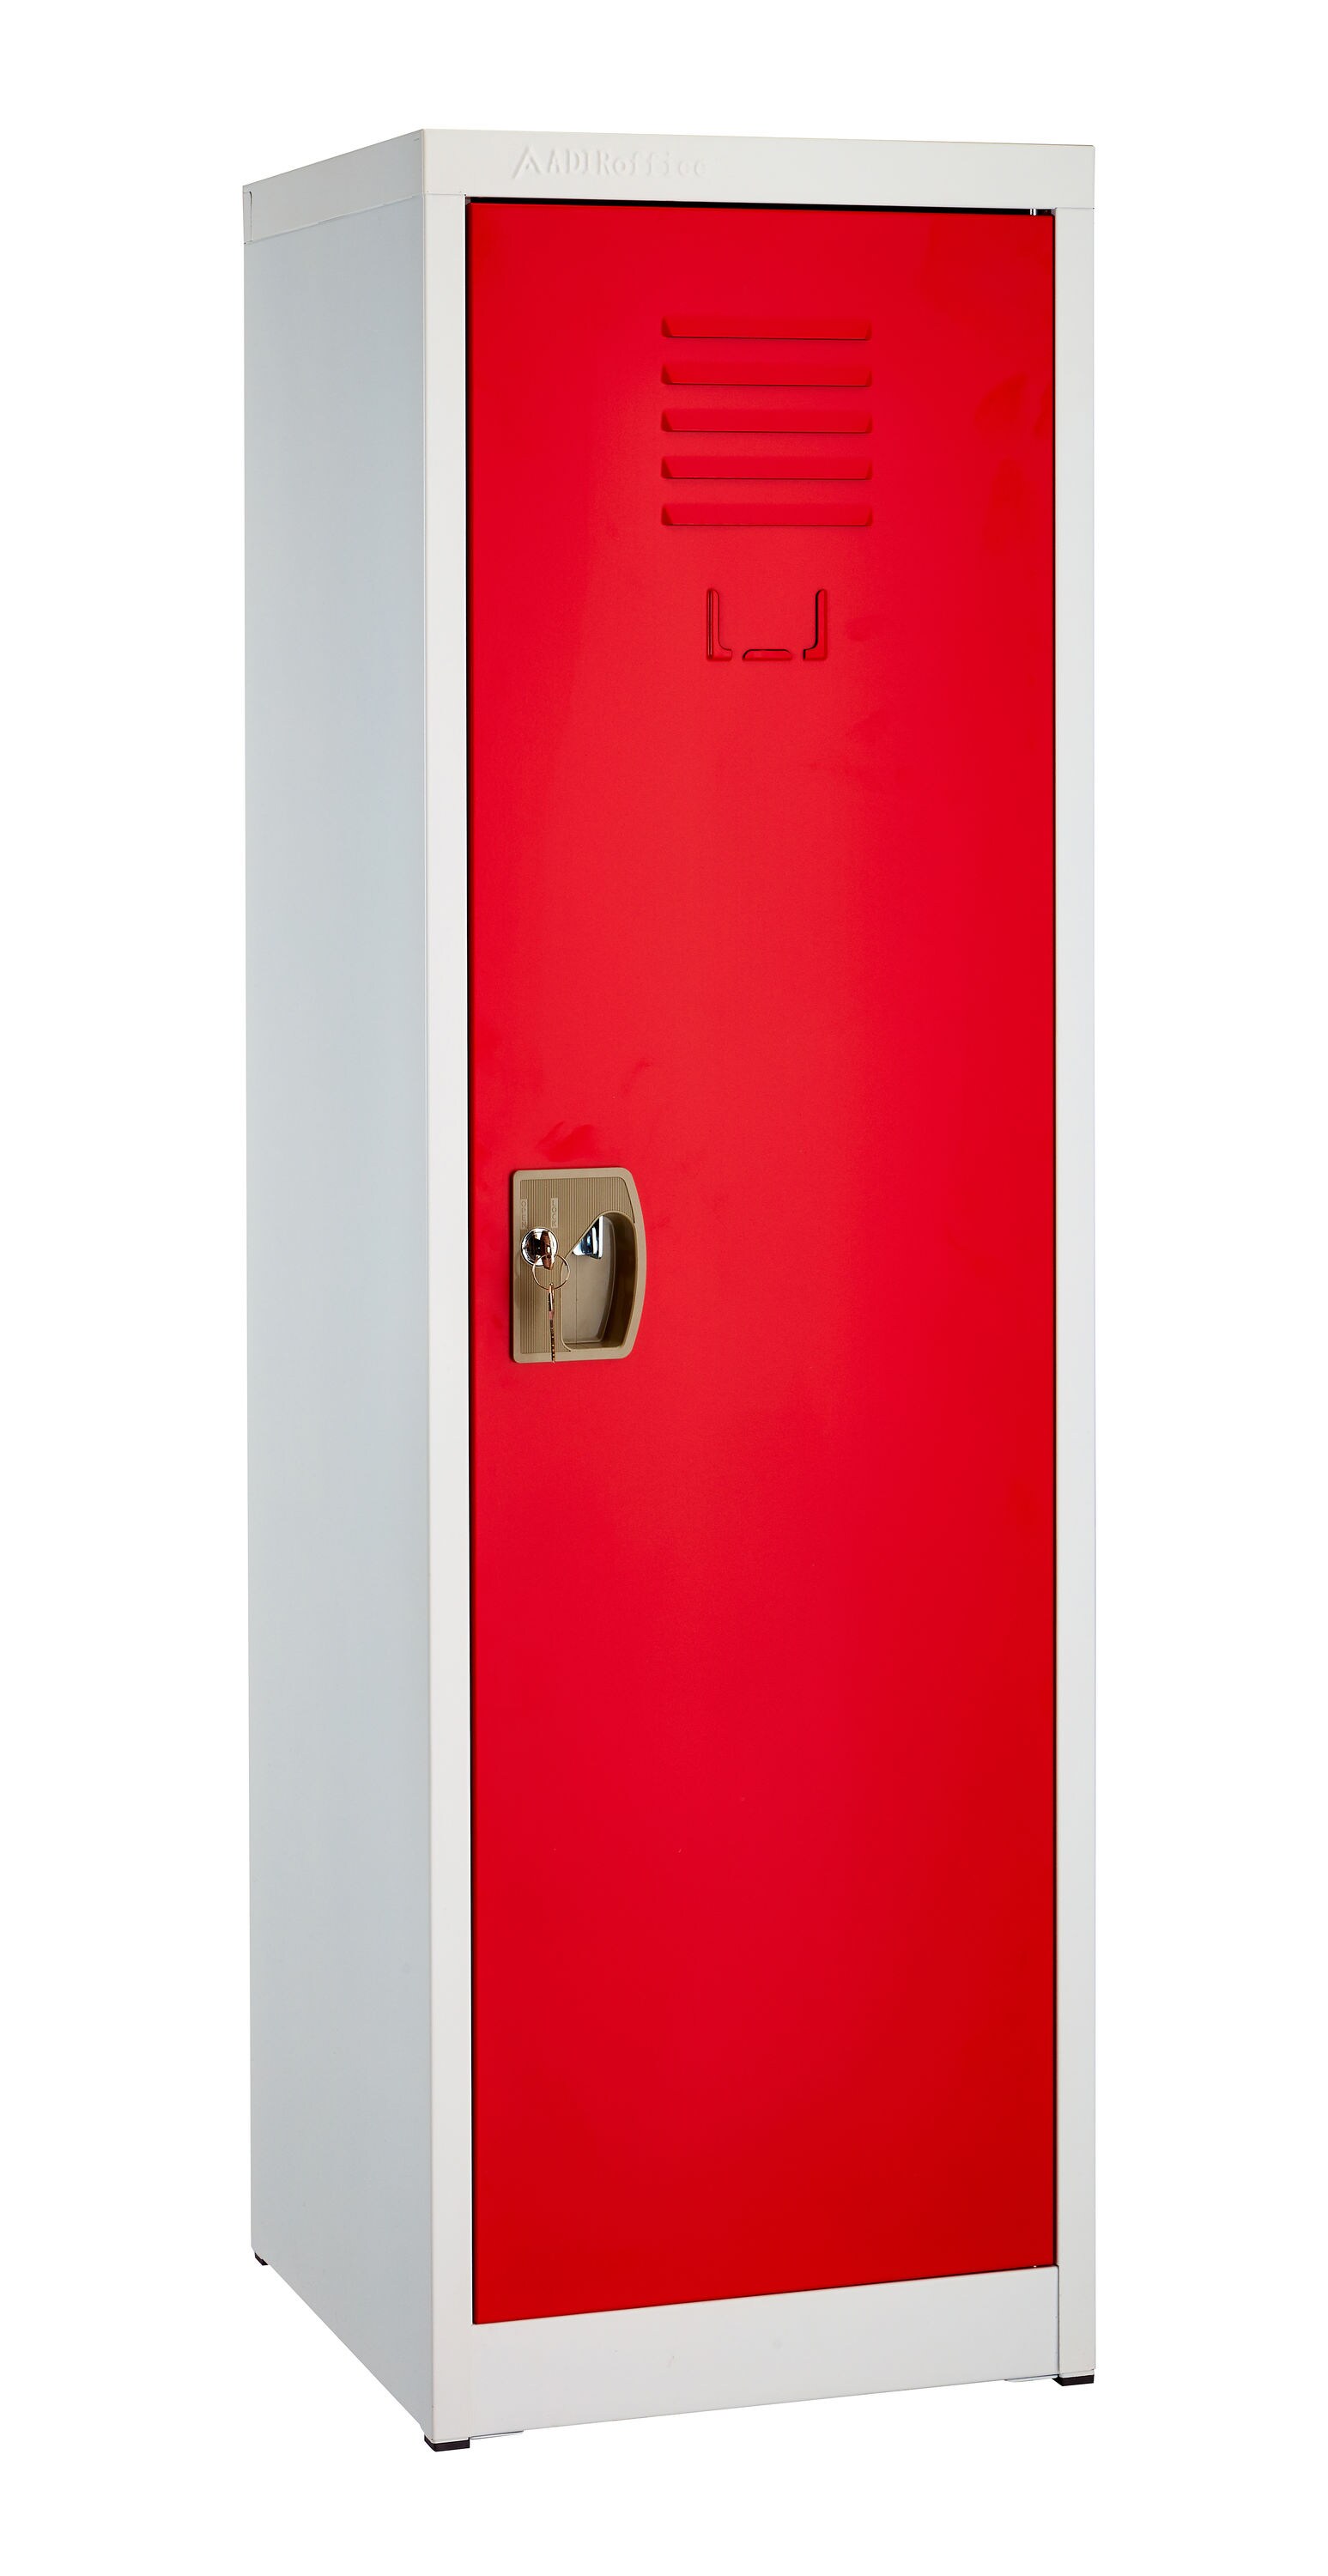 Child Storage Cabinet Lockable Kids Home Gym Locker AdirOffice Red Steel 24 in 